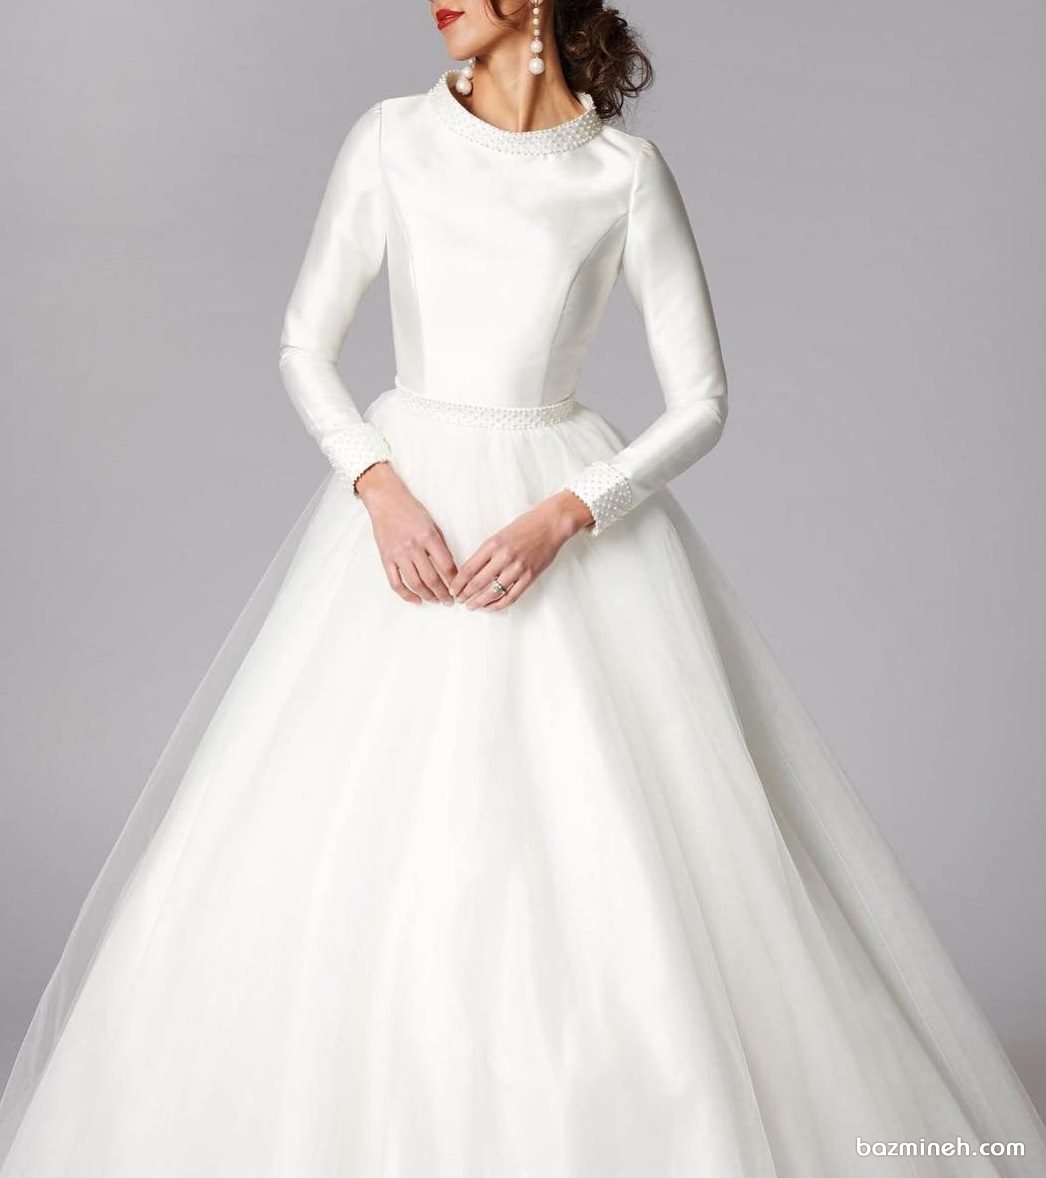 مدل بالا تنه ساده و شیک لباس عروس پوشیده آستین دار با پارچه تافته مروارید دوزی شده 